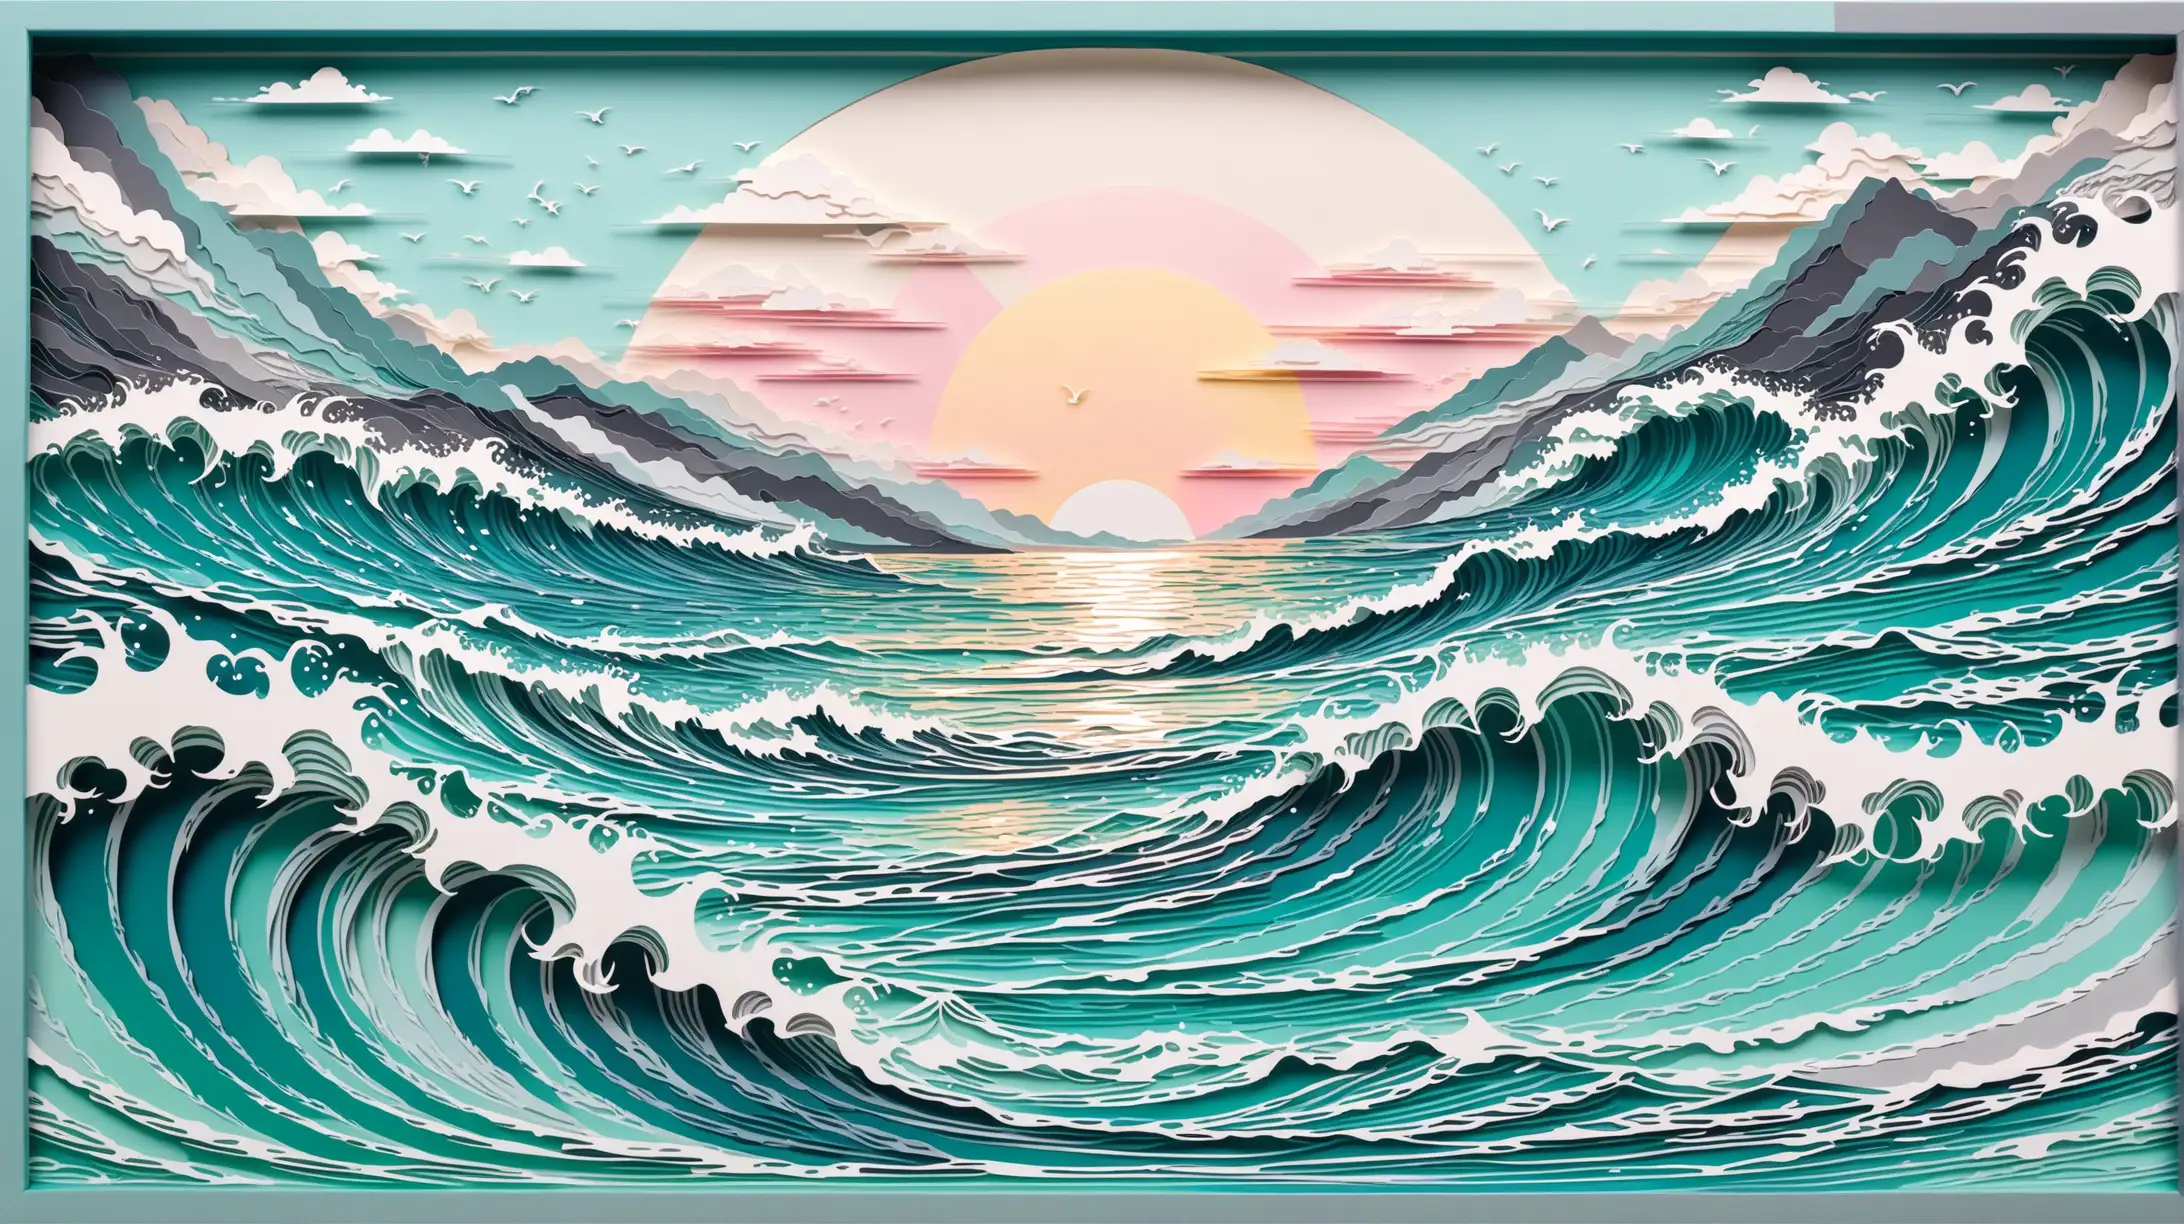 Ocean Wave Panorama LaserCut Paper Illustration in Pastel Colors